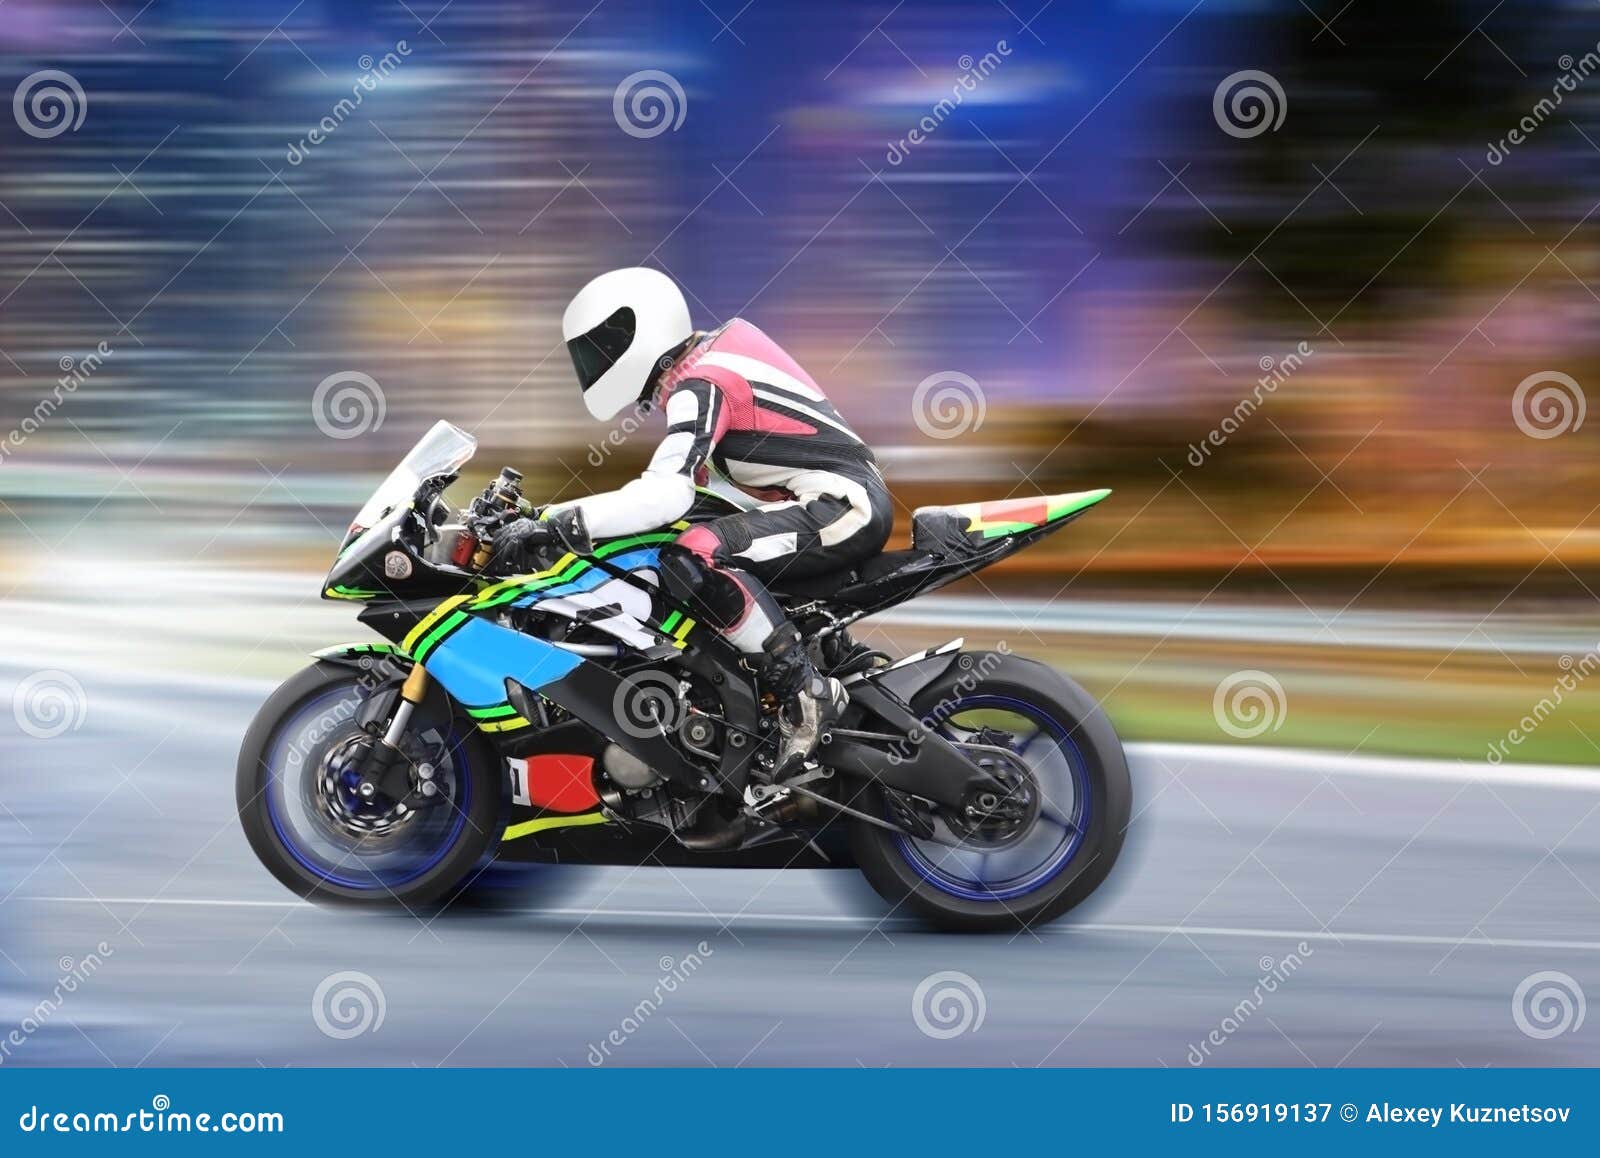 Corrida de motos · Free Stock Photo